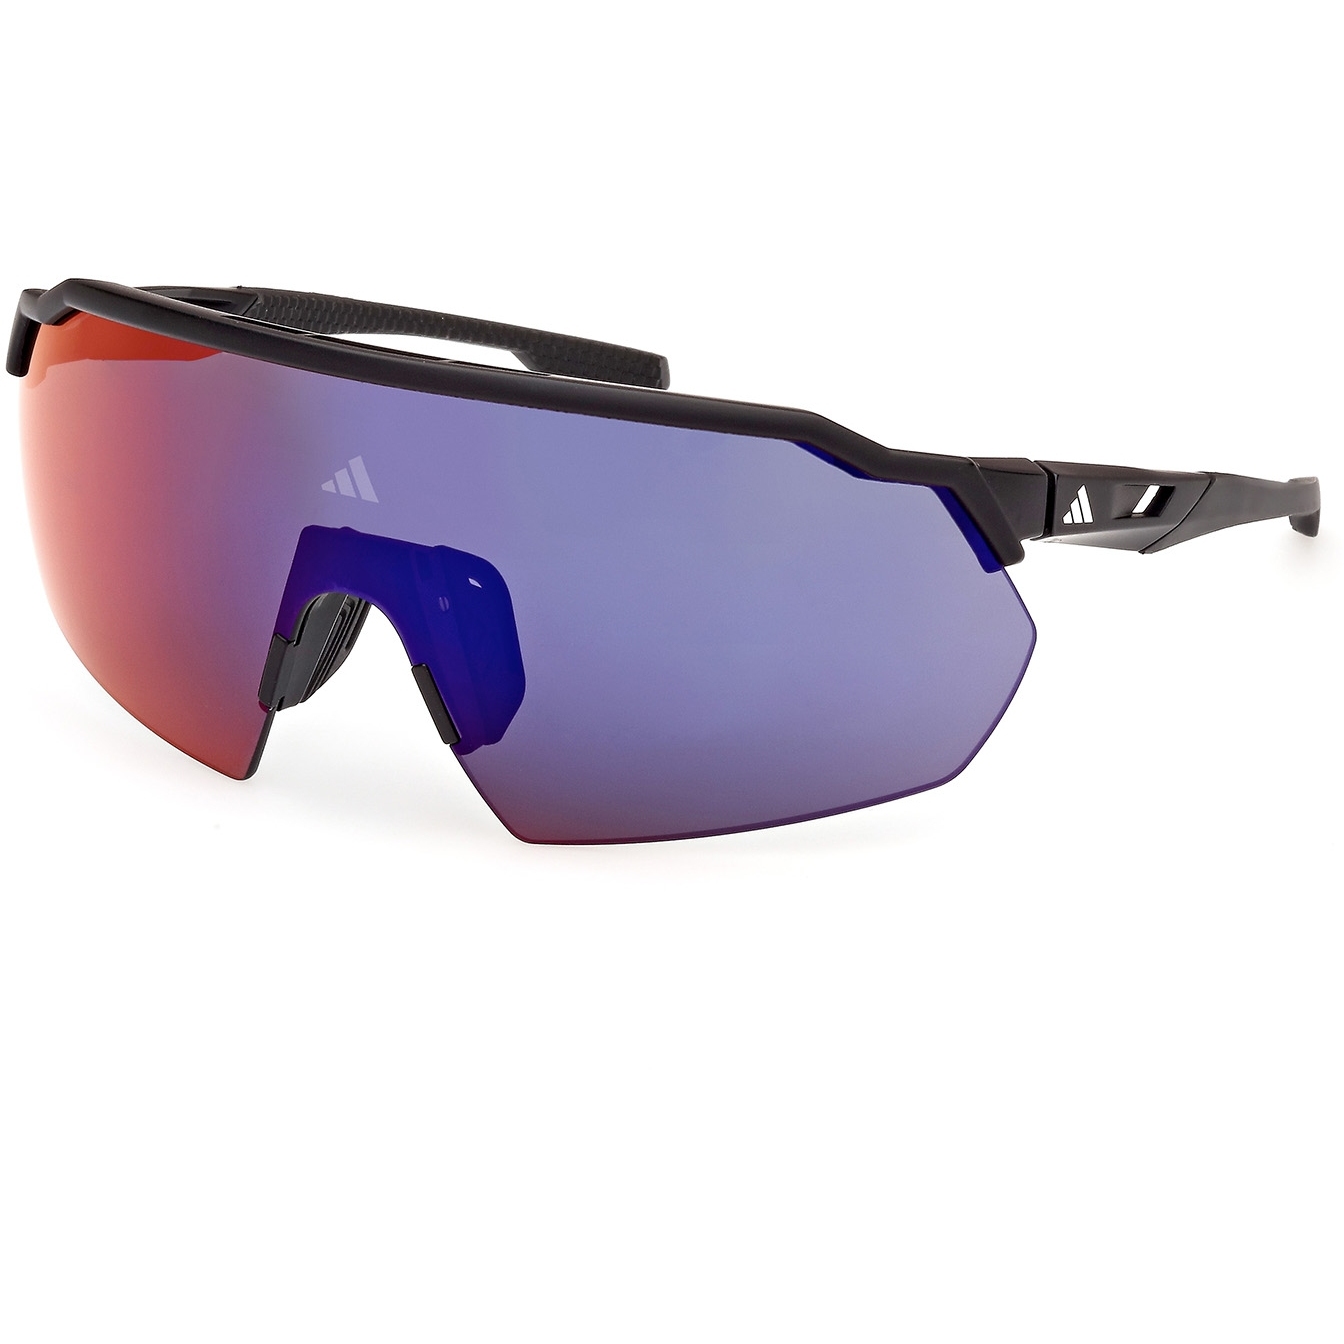 Produktbild von adidas SP0093 Sport Sonnenbrille - Matte Black / Gradient or Violet Mirror